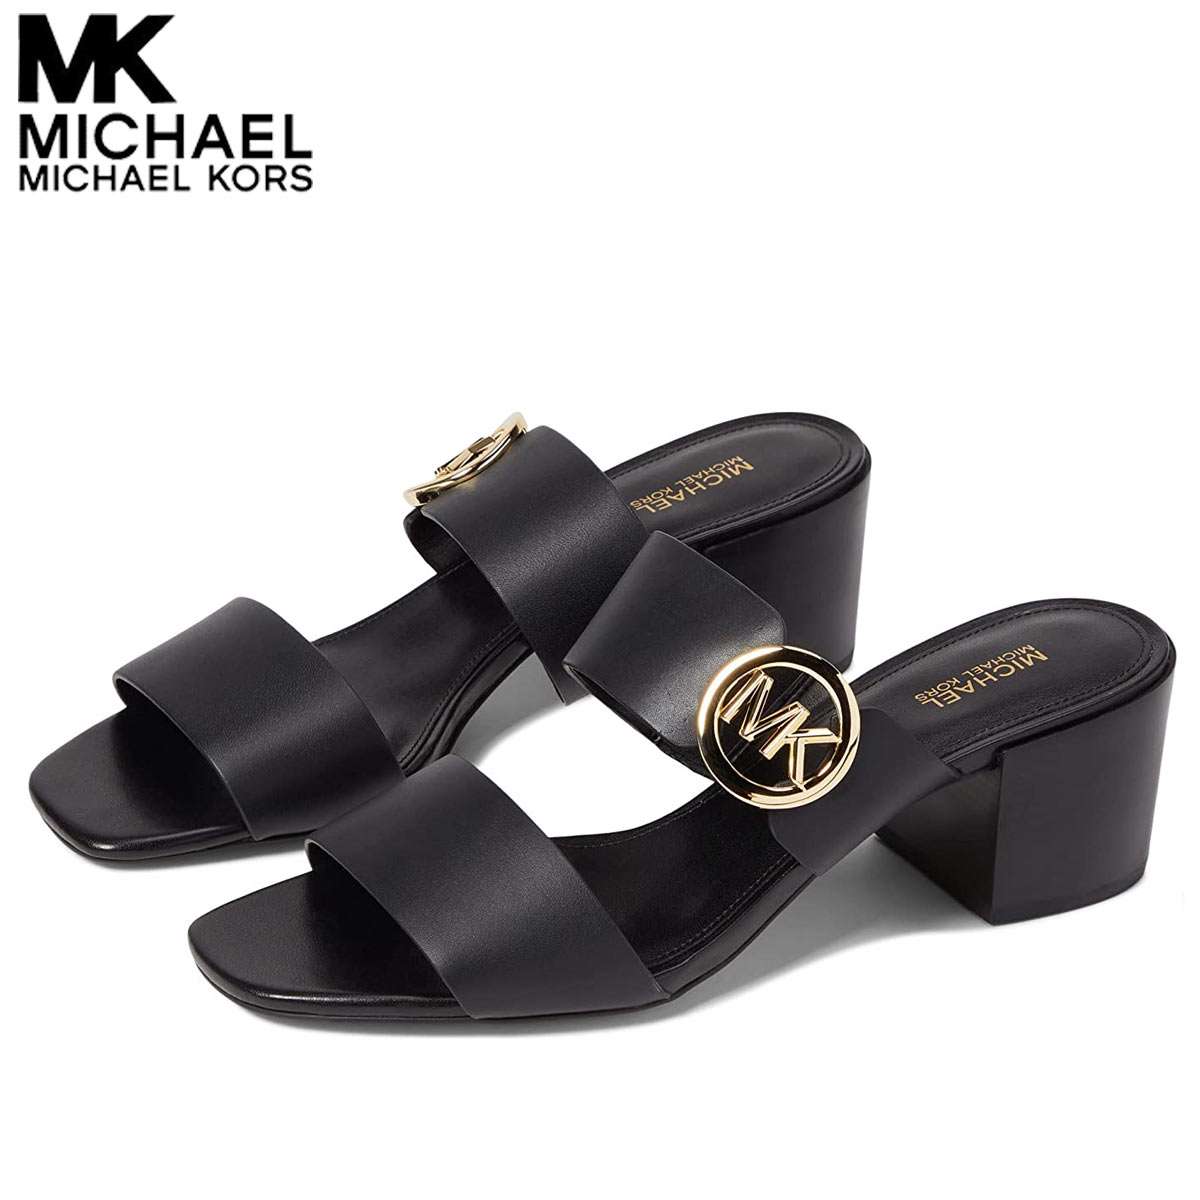 マイケルコース サンダル レディース ヒール アンクルストラップ バックベルト ブランド 靴 大きいサイズあり Michael Kors